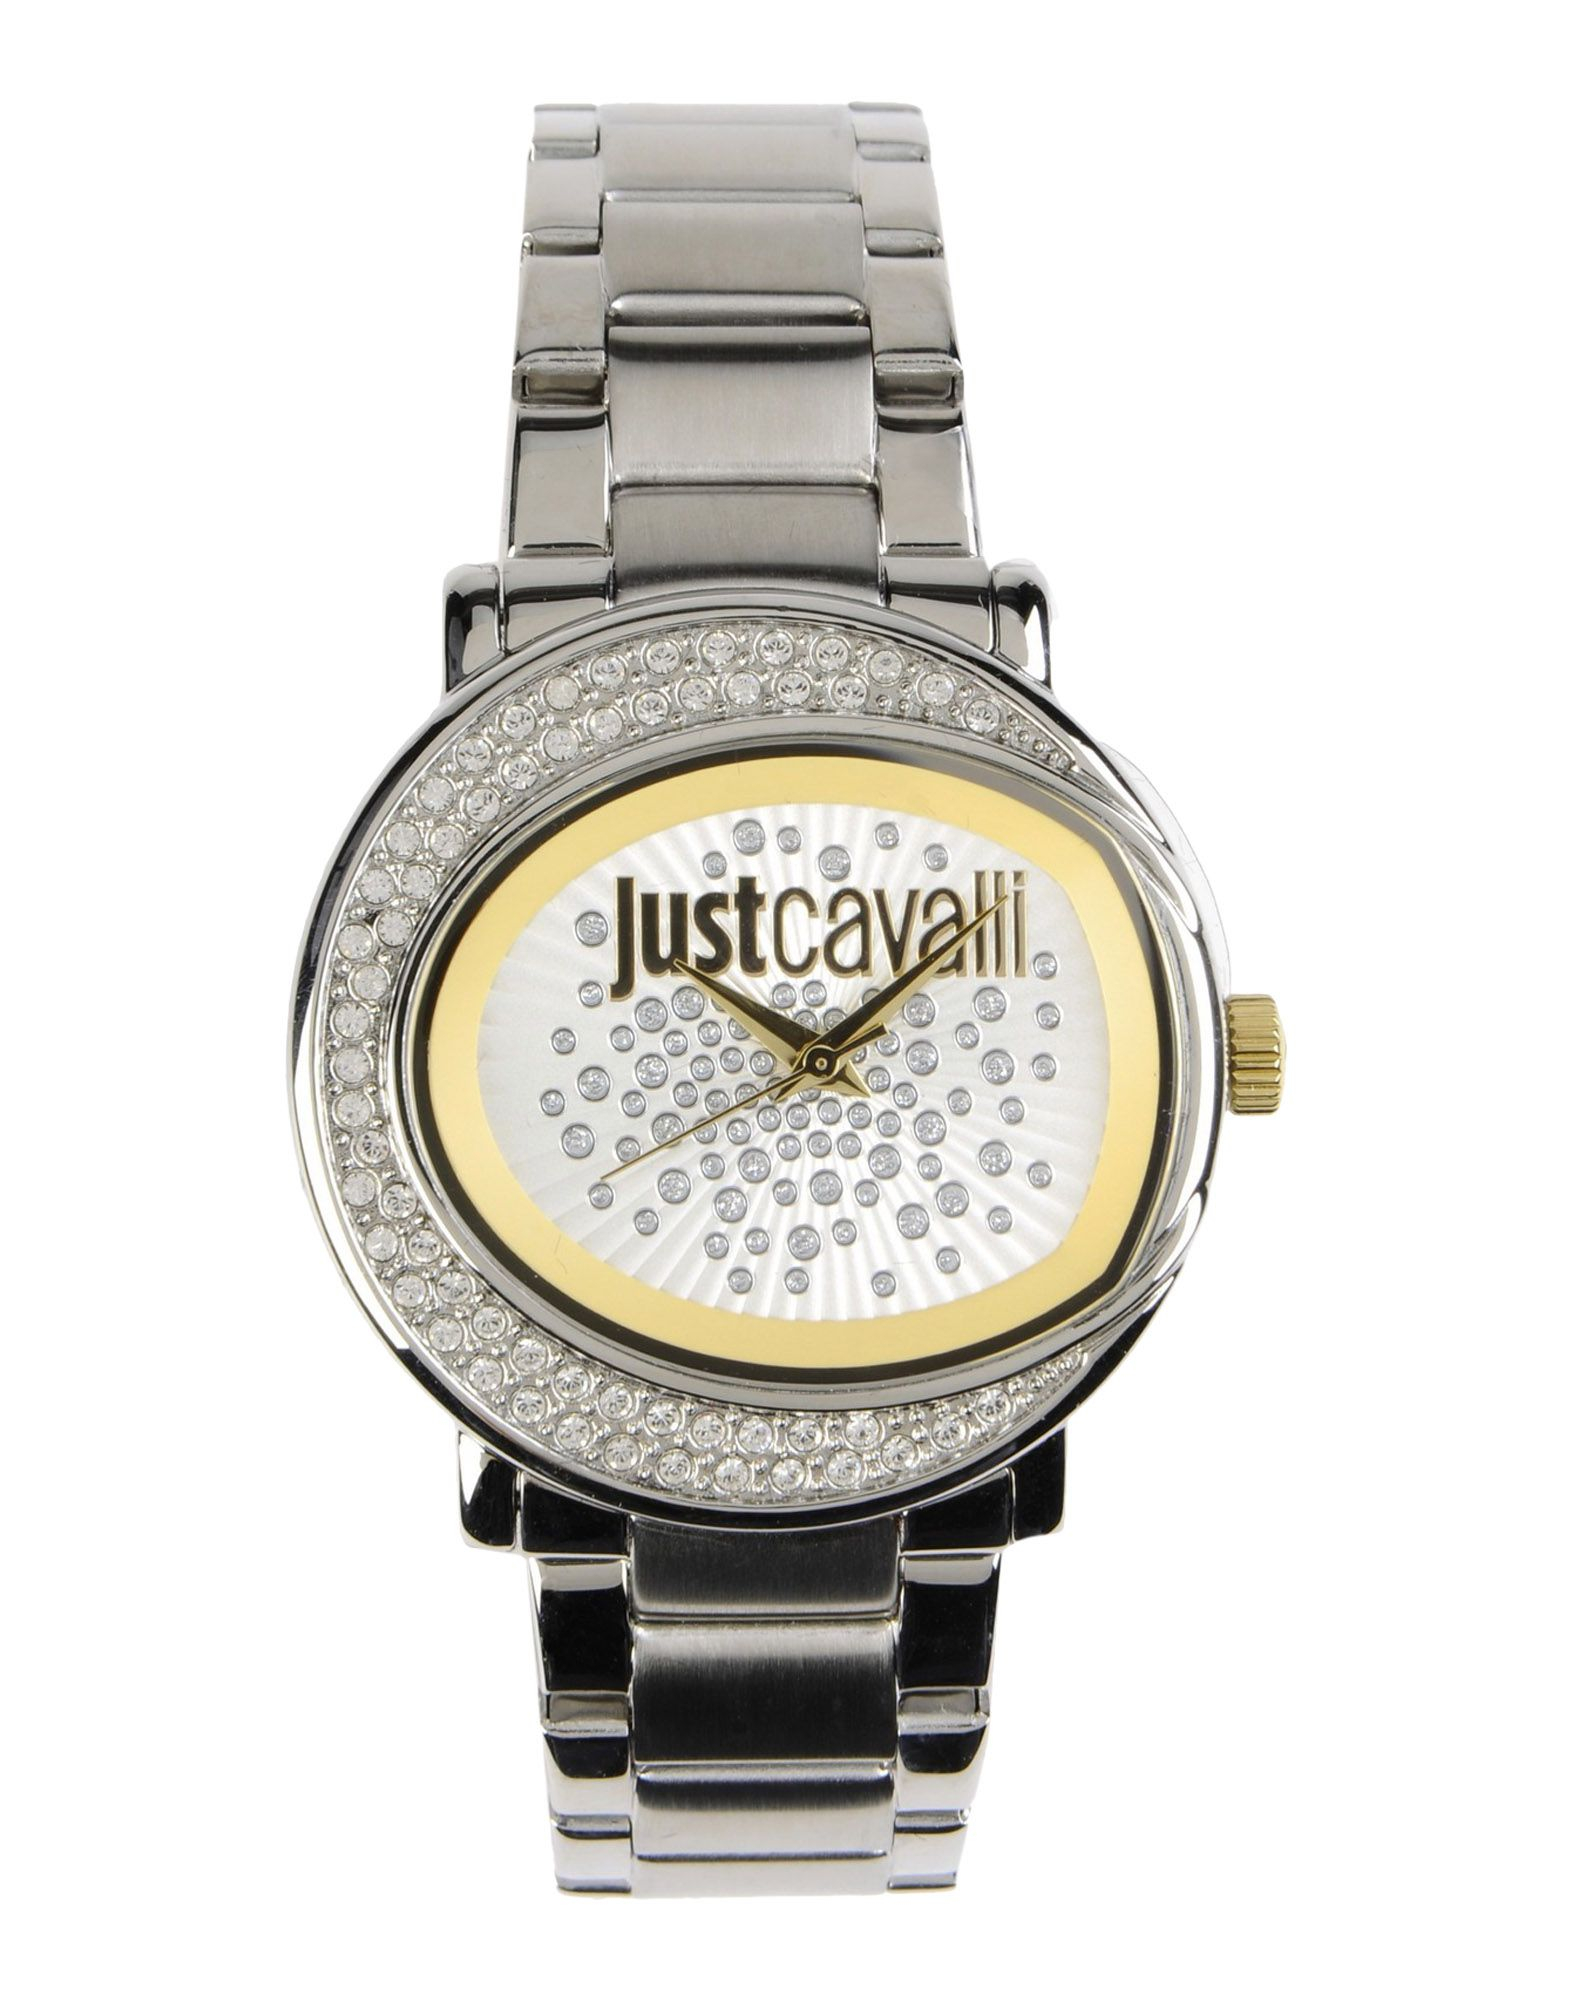 Just cavalli Wrist Watch in Silver | Lyst